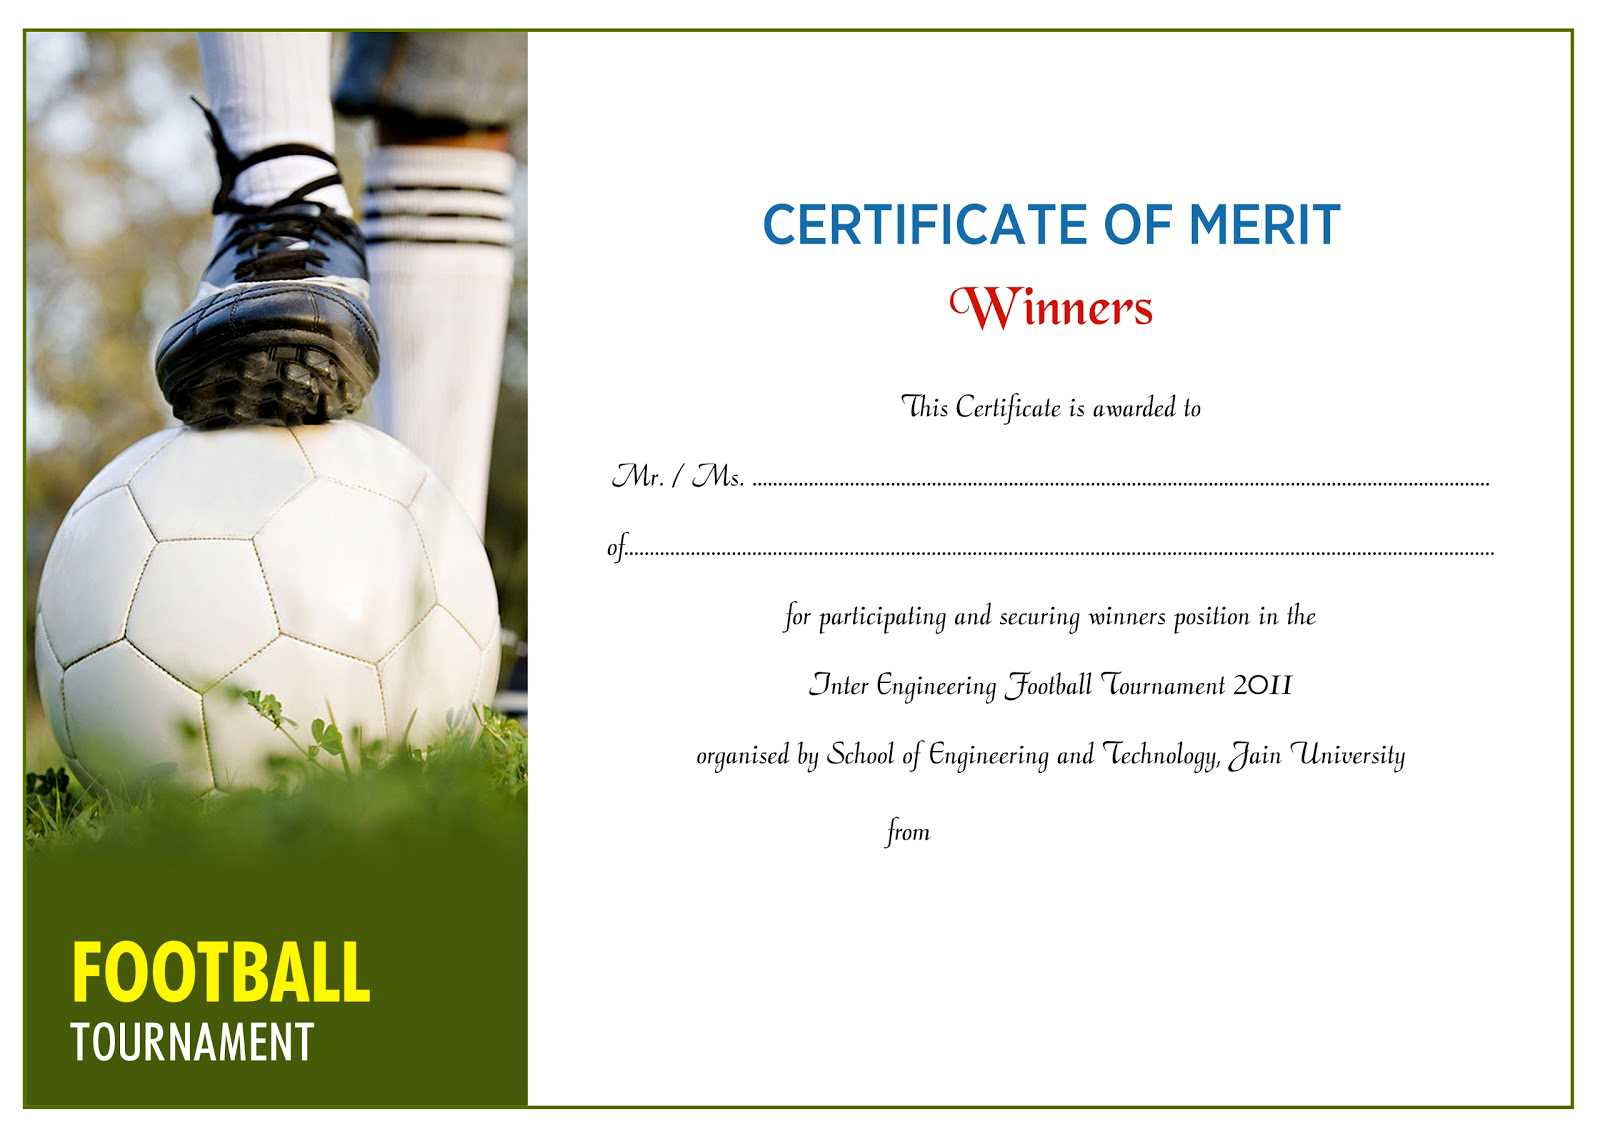 Certificate Design Idea For Football Certificate With Regard To Football Certificate Template